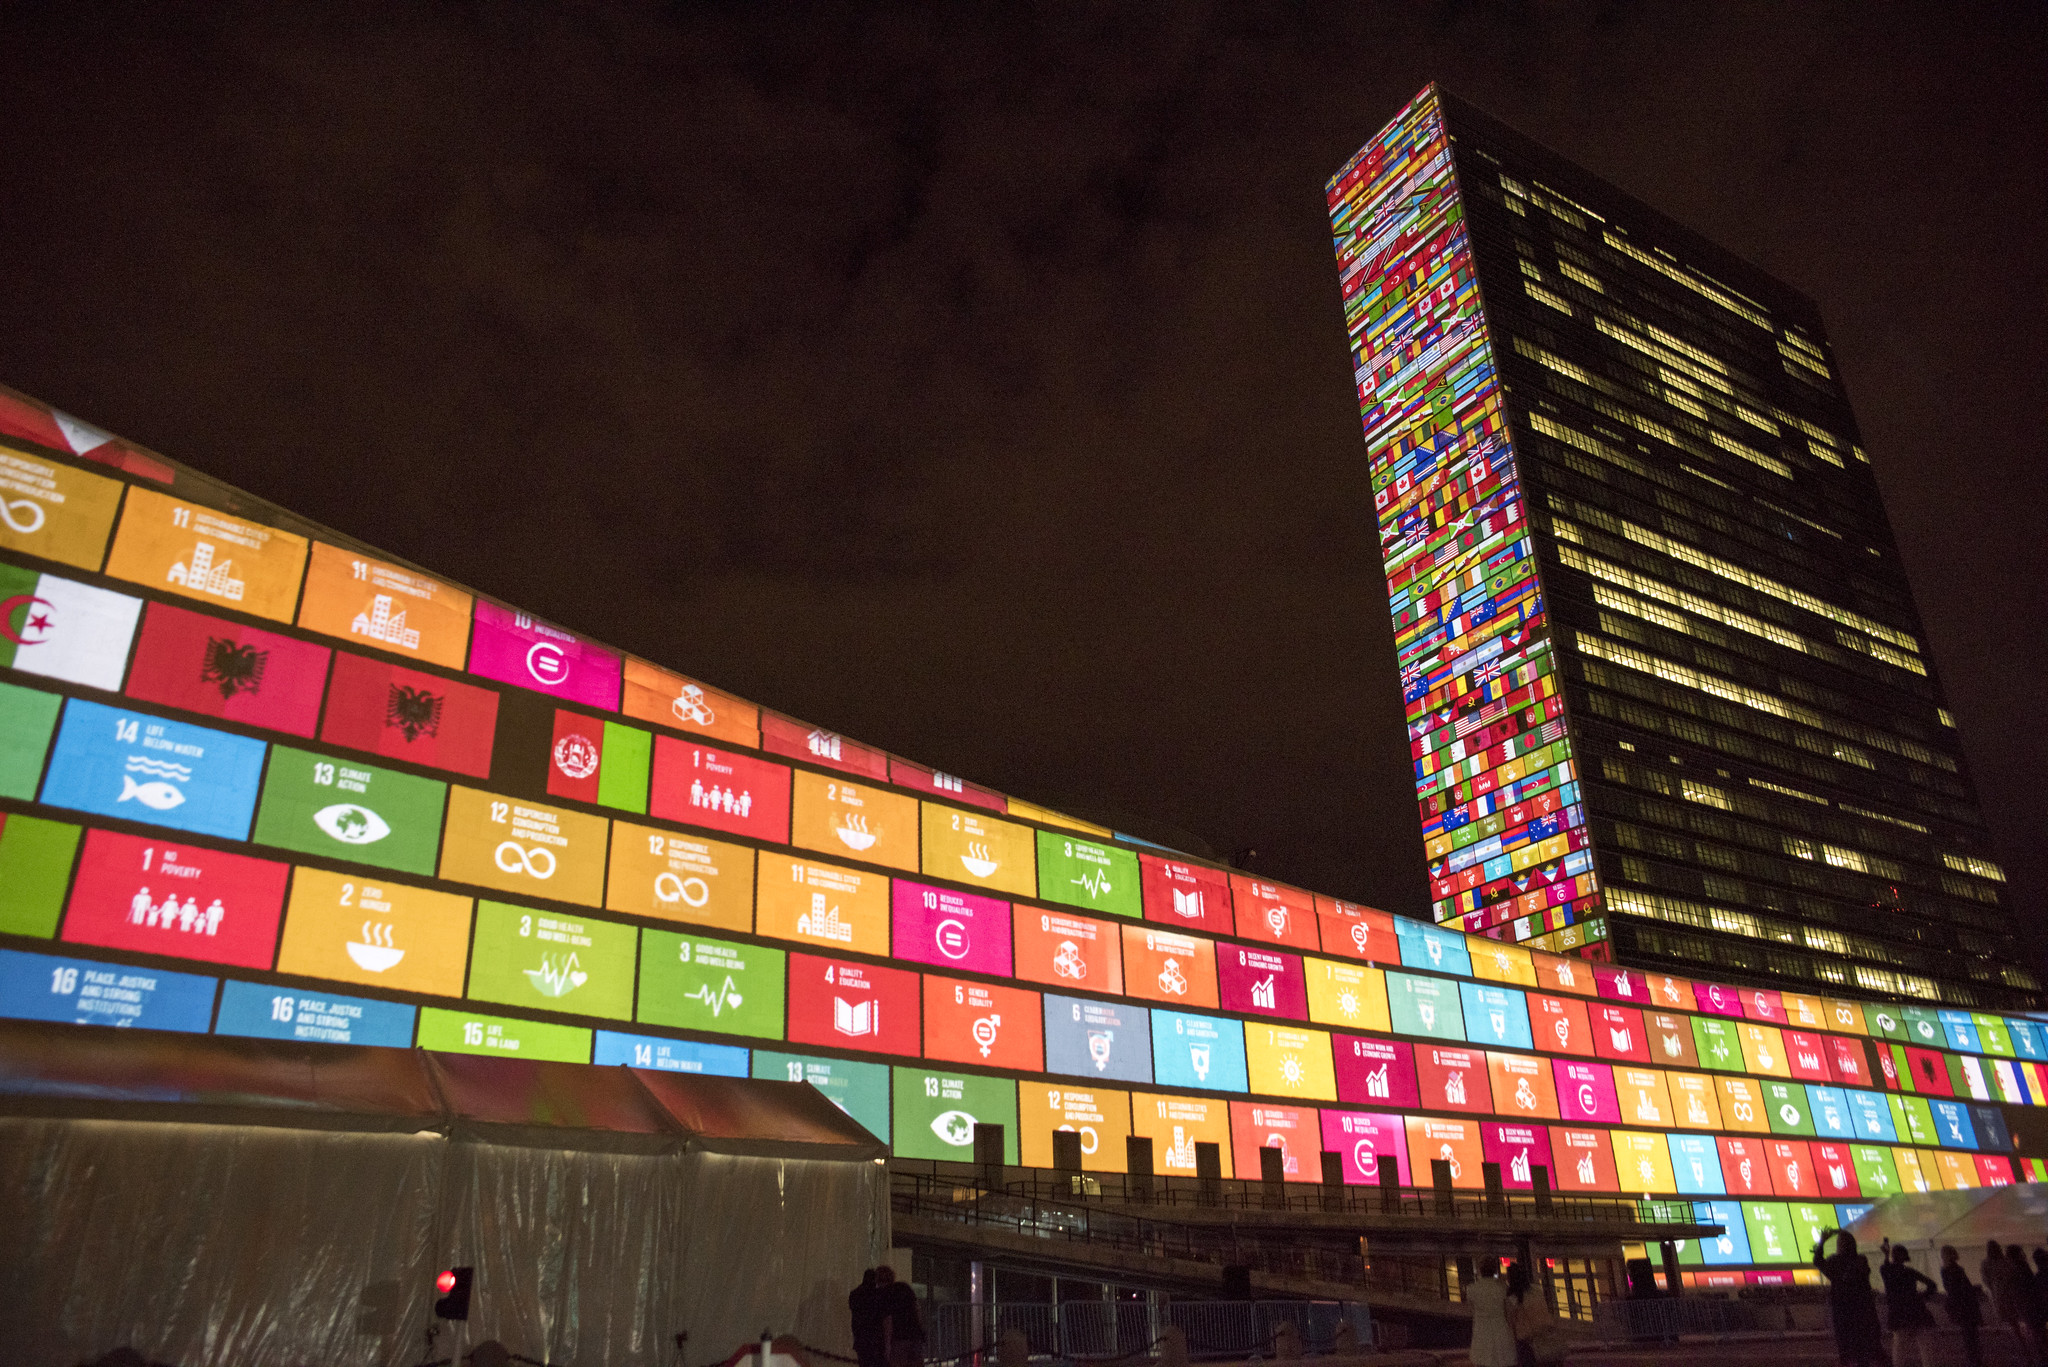 El edificio de las Naciones Unidas en Nueva York durante el septuagésimo período de sesiones de la Asamblea General de las Naciones Unidas, cuando se acordaron los Objetivos de Desarrollo Sostenible. Foto por: Servicio de Fotografía de las Naciones Unidas.